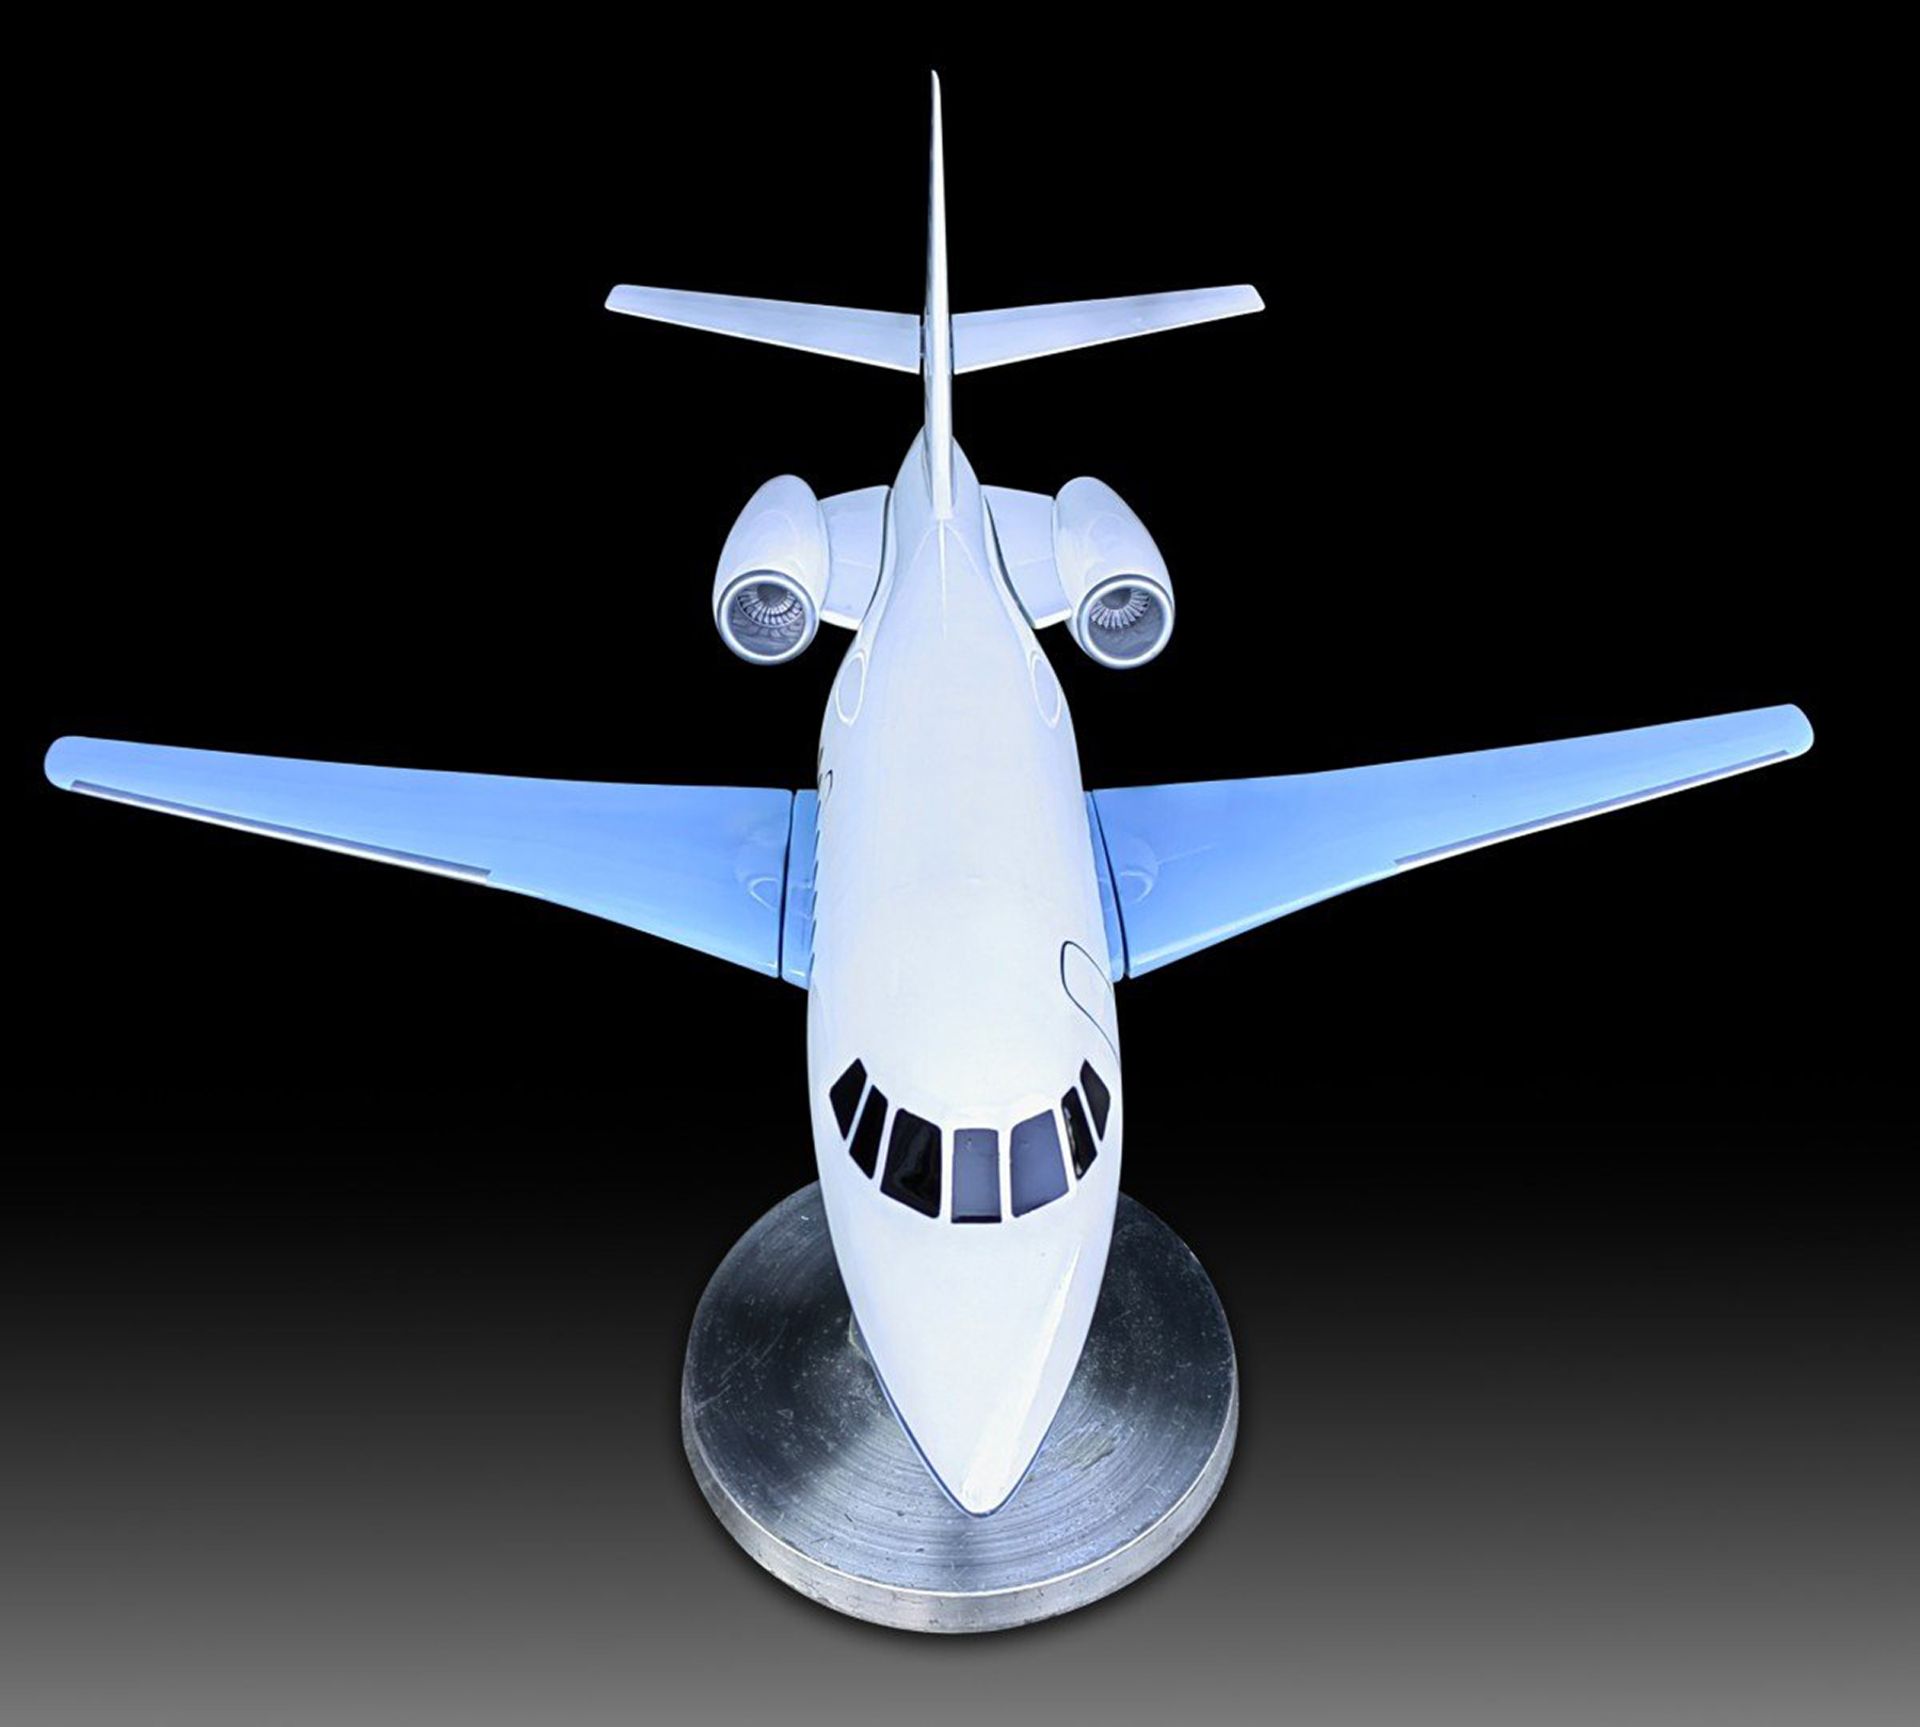 Aluminum Falcon Private Plane Scale Model, 1970s - Image 2 of 5